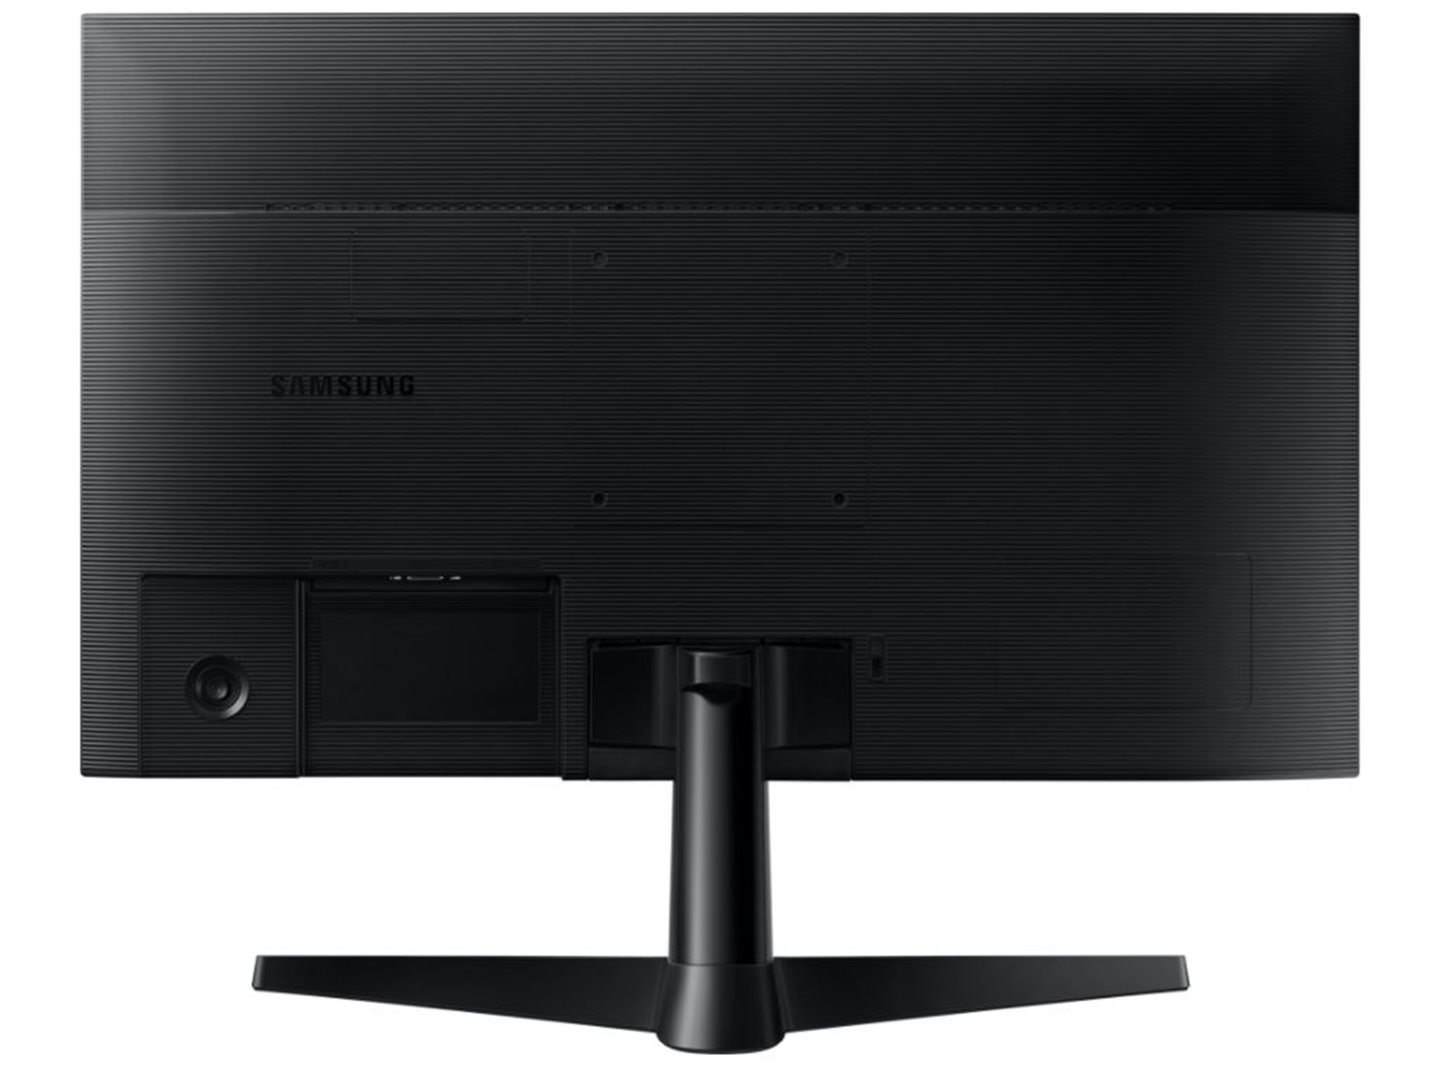 Monitor Samsung F24T350, 24" FullHD (LF24T350FHRXEN)